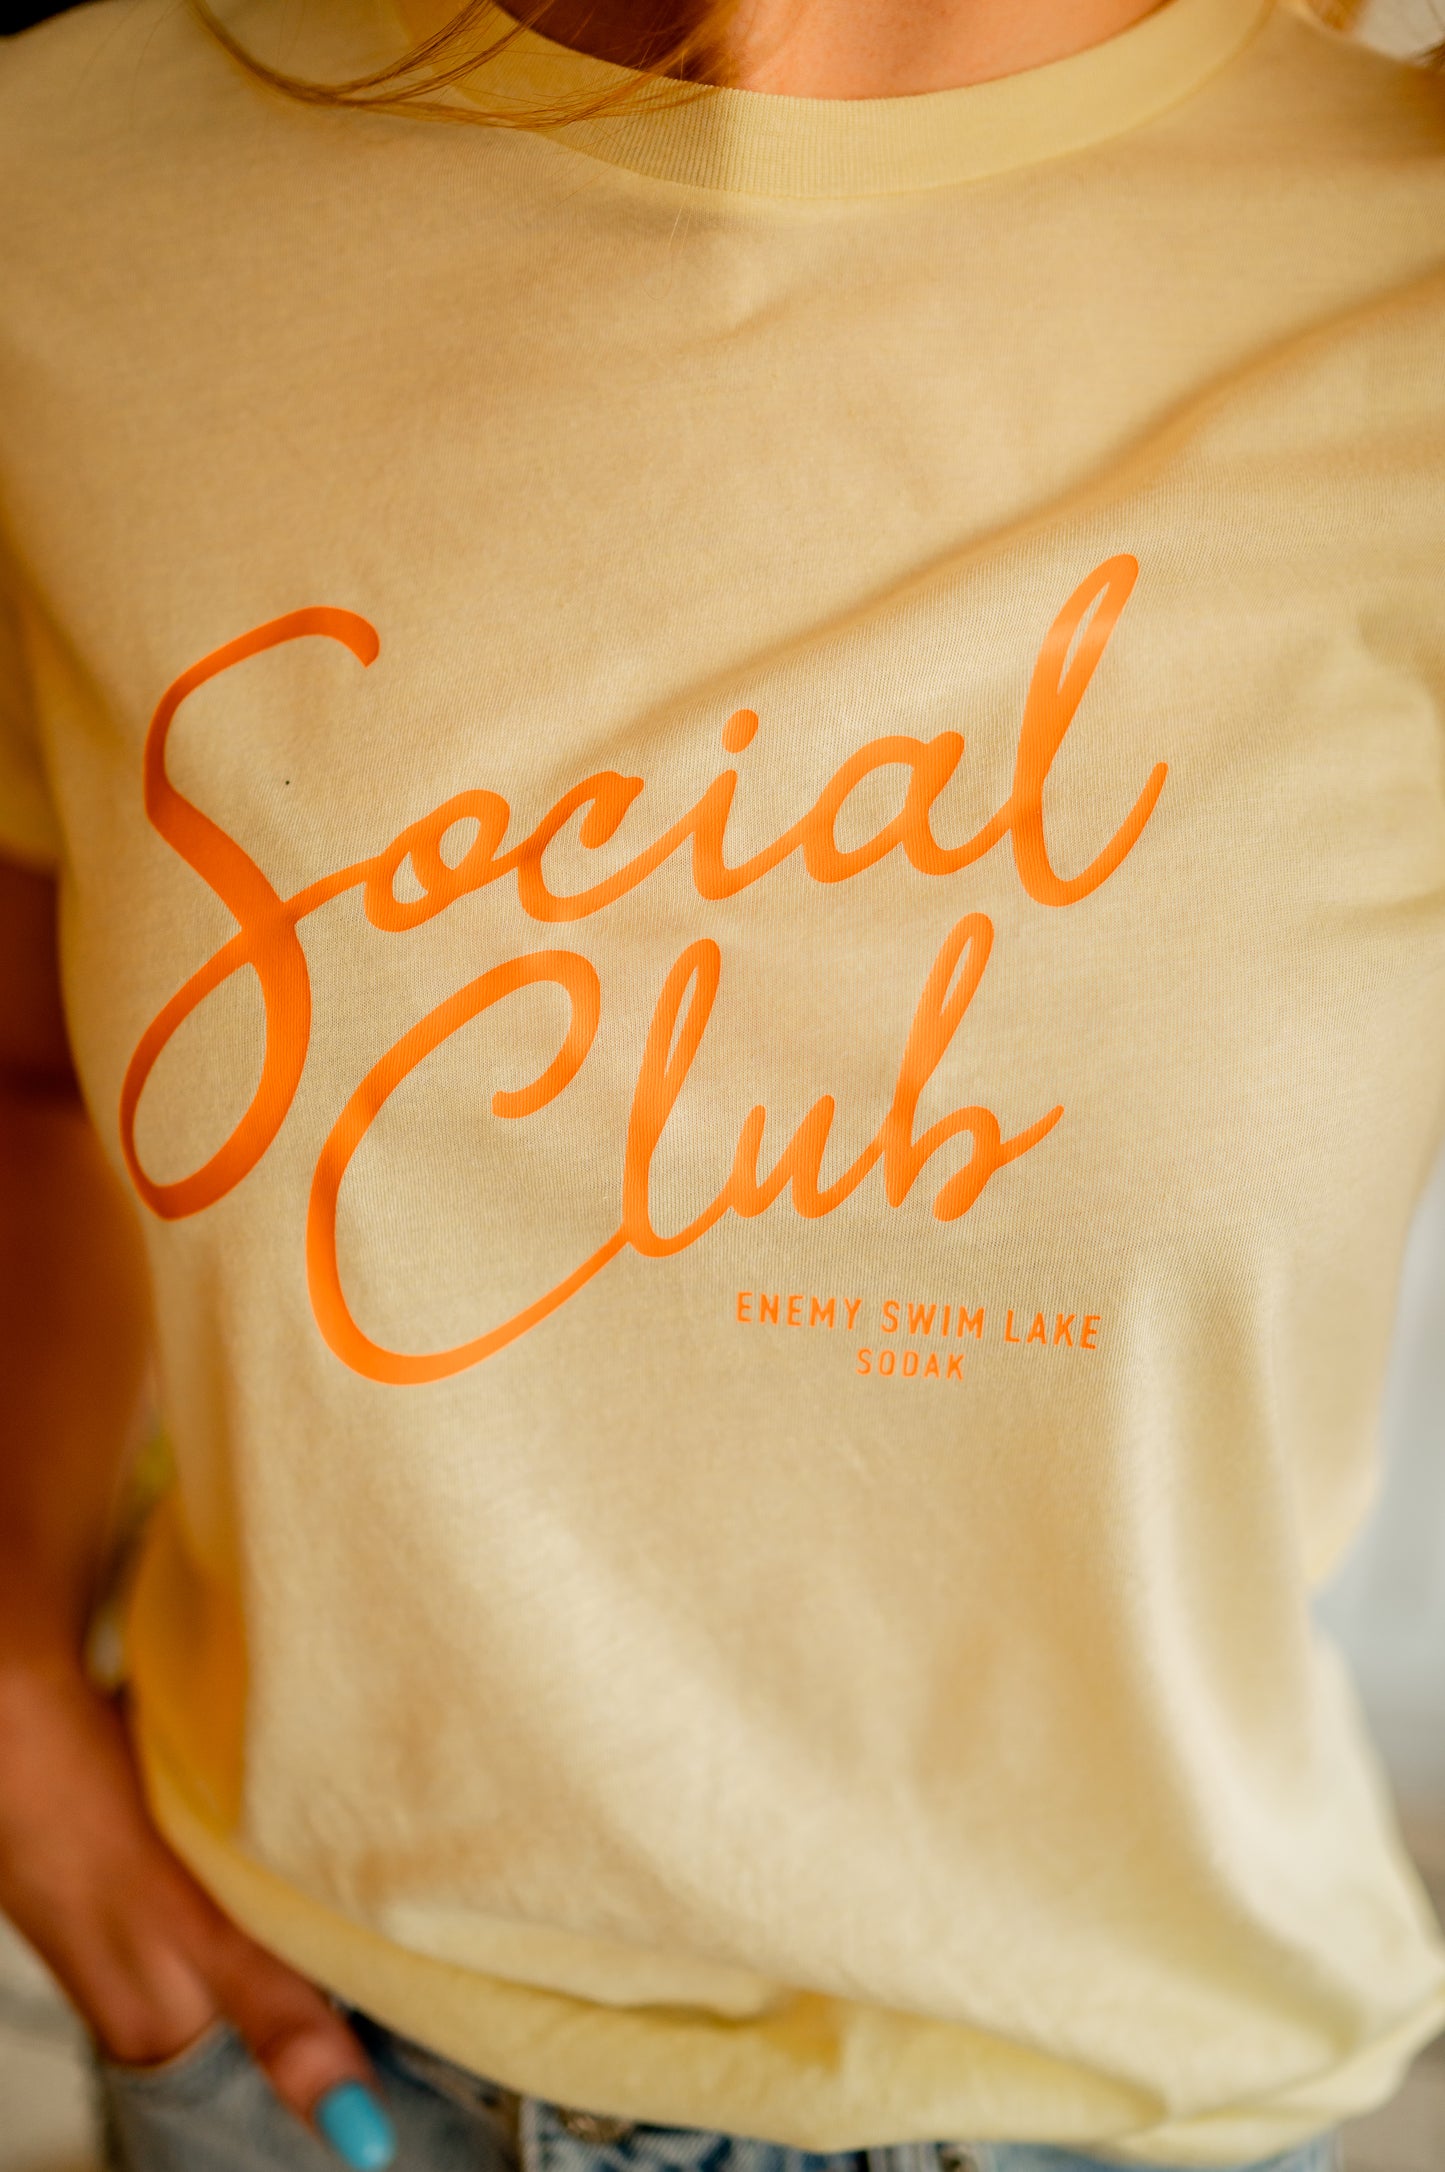 Social Club Tee - Enemy Swim